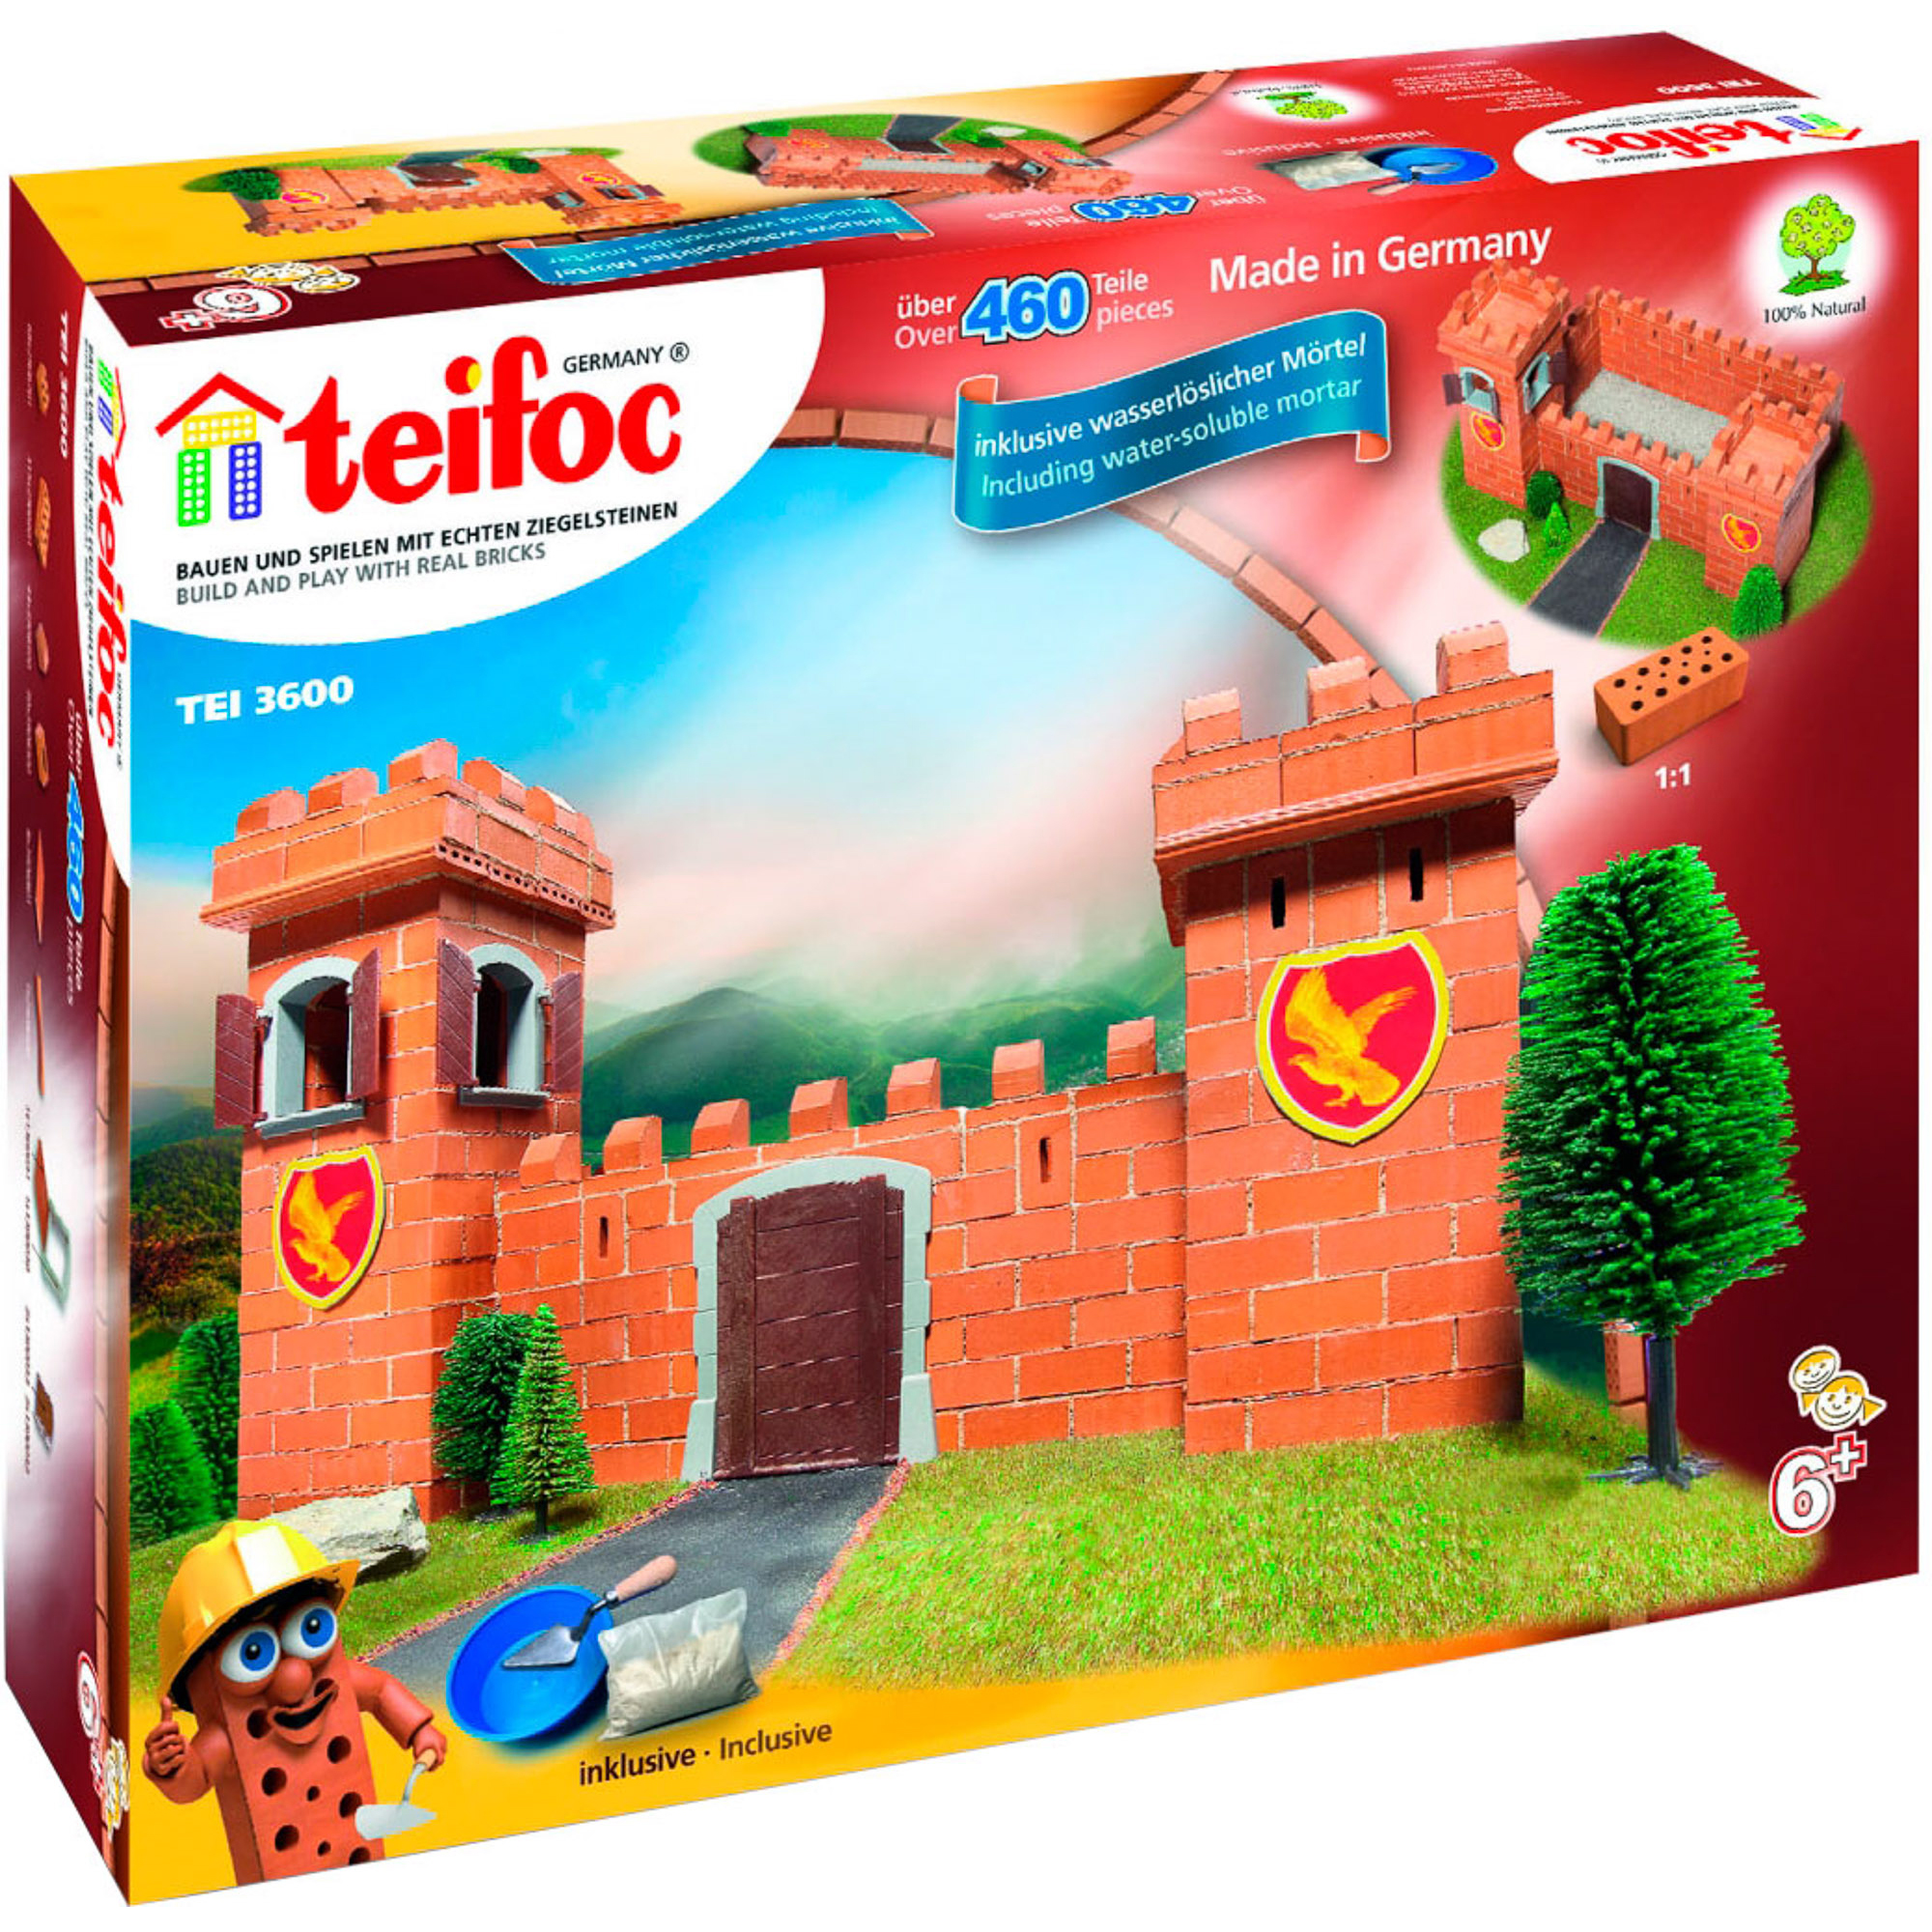 Игровой набор TEIFOC Рыцарский замок TEI 3600 lukno набор формочек для песка замки 1